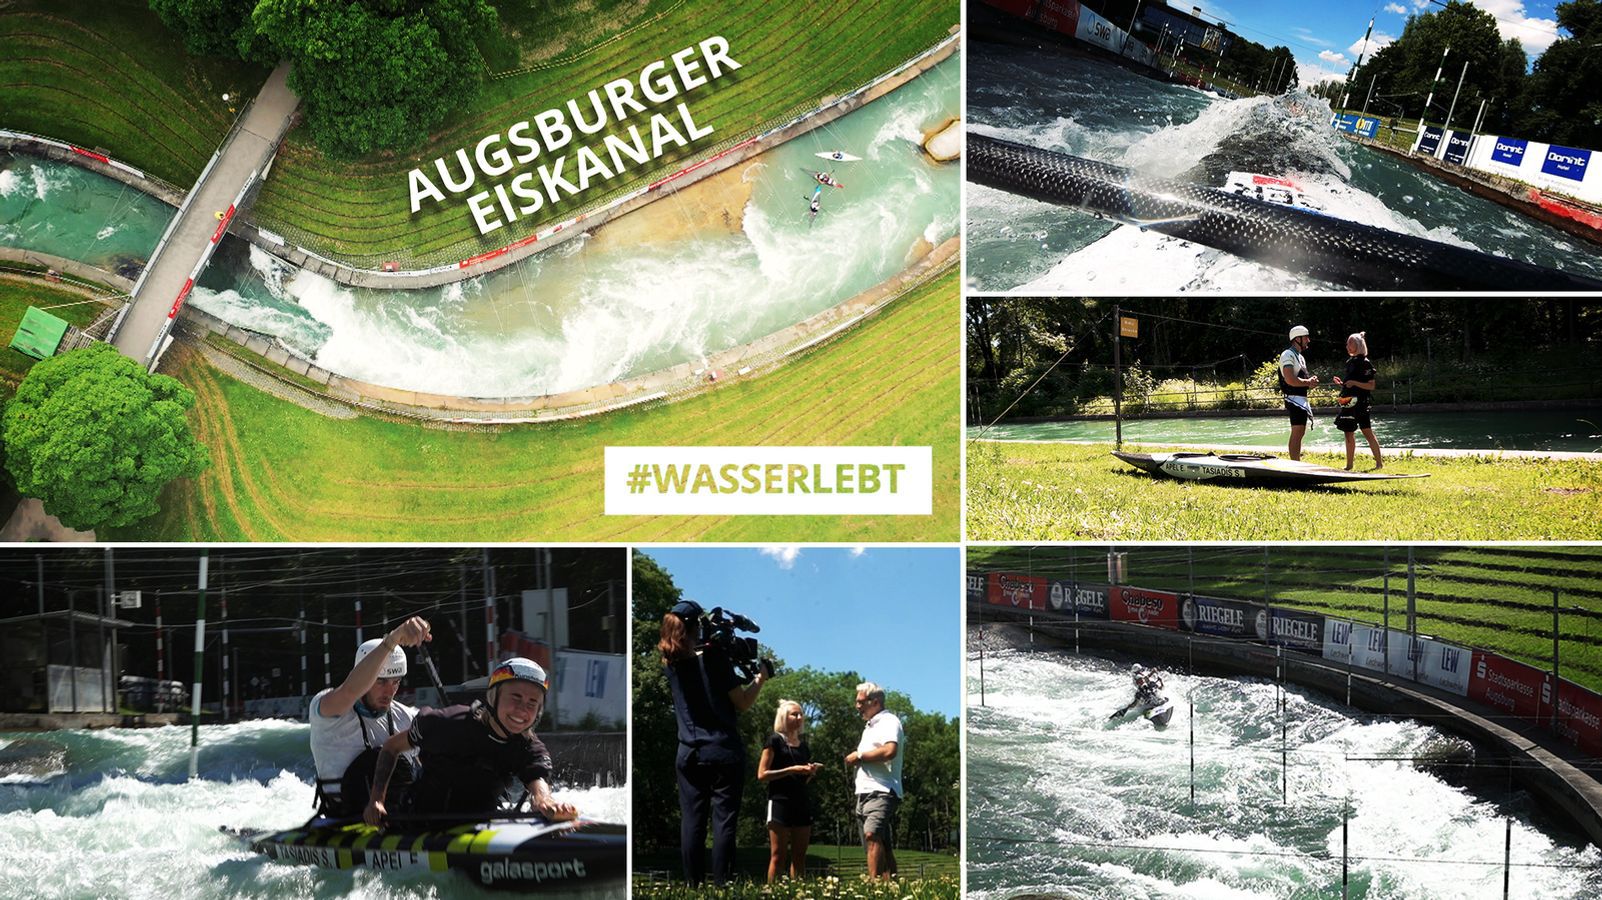 #wasserlebt: Der Augsburger Eiskanal - bald Weltkulturerbe?